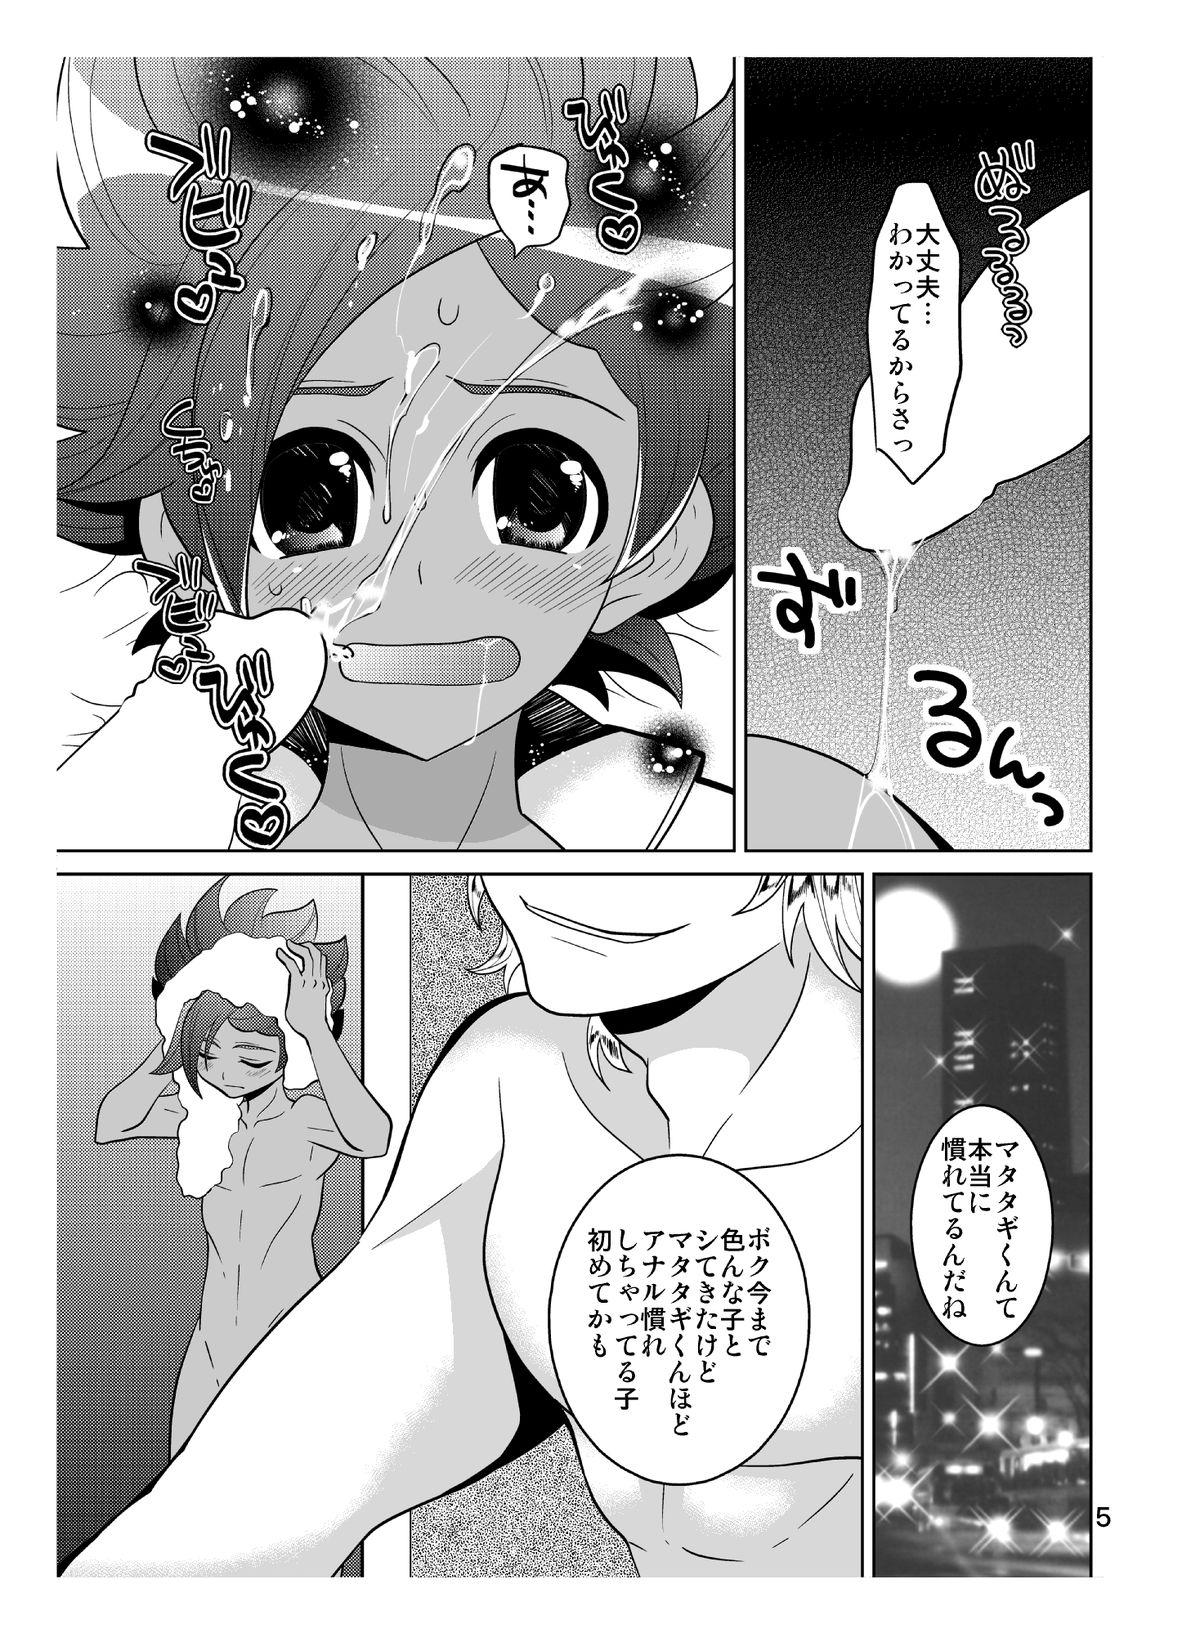 Casero Matatagi Darkness - Inazuma eleven Shemale - Page 5